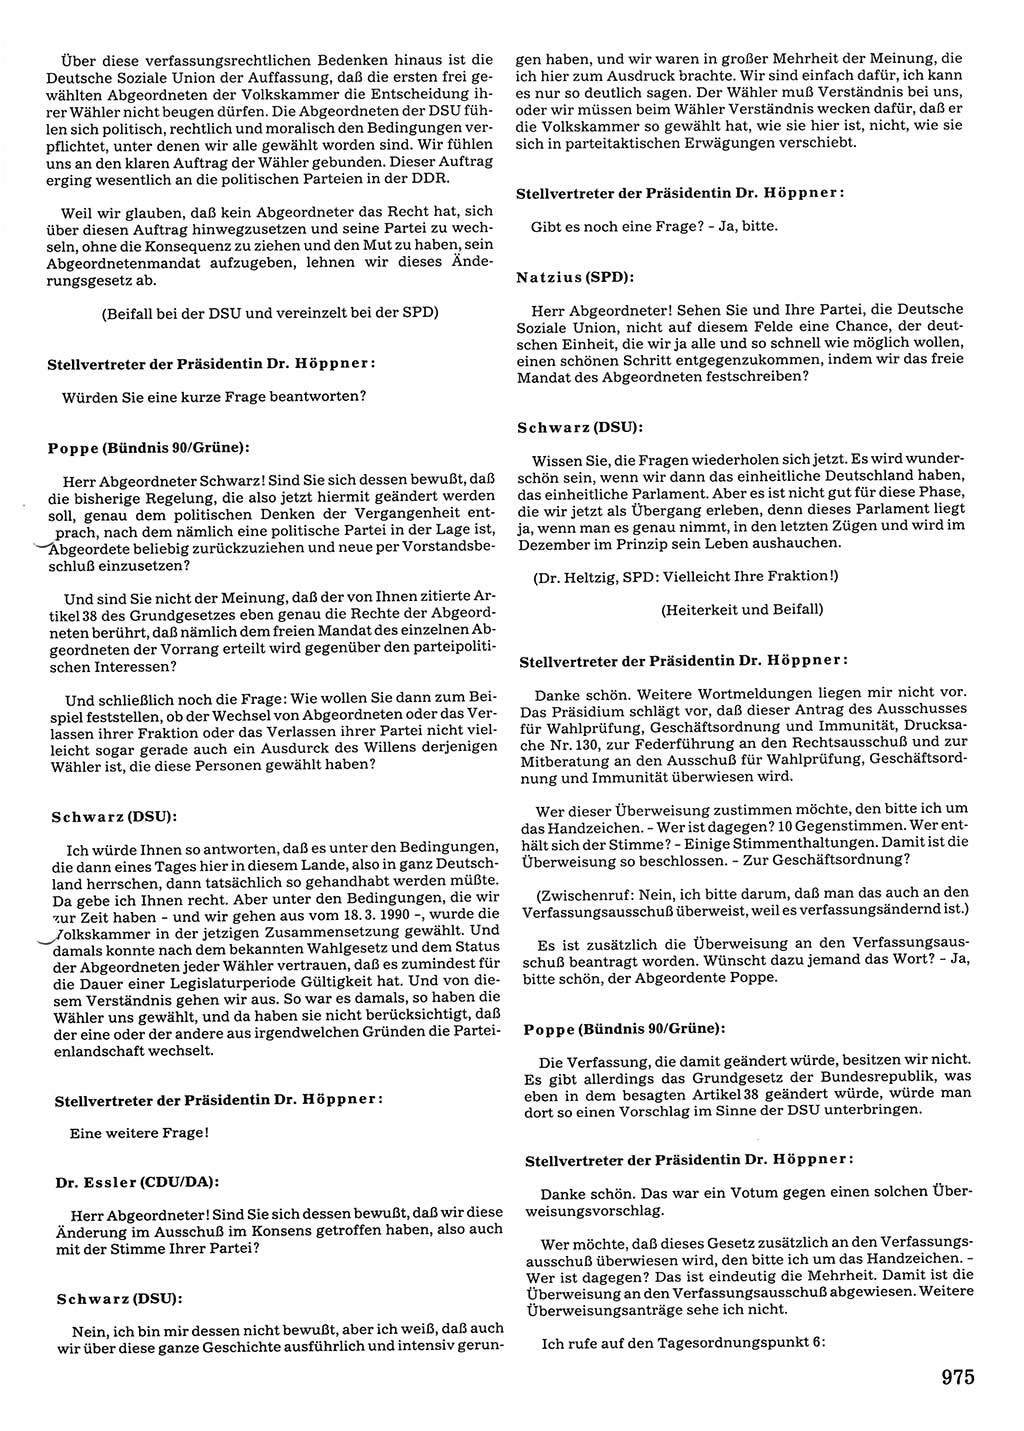 Tagungen der Volkskammer (VK) der Deutschen Demokratischen Republik (DDR), 10. Wahlperiode 1990, Seite 975 (VK. DDR 10. WP. 1990, Prot. Tg. 1-38, 5.4.-2.10.1990, S. 975)